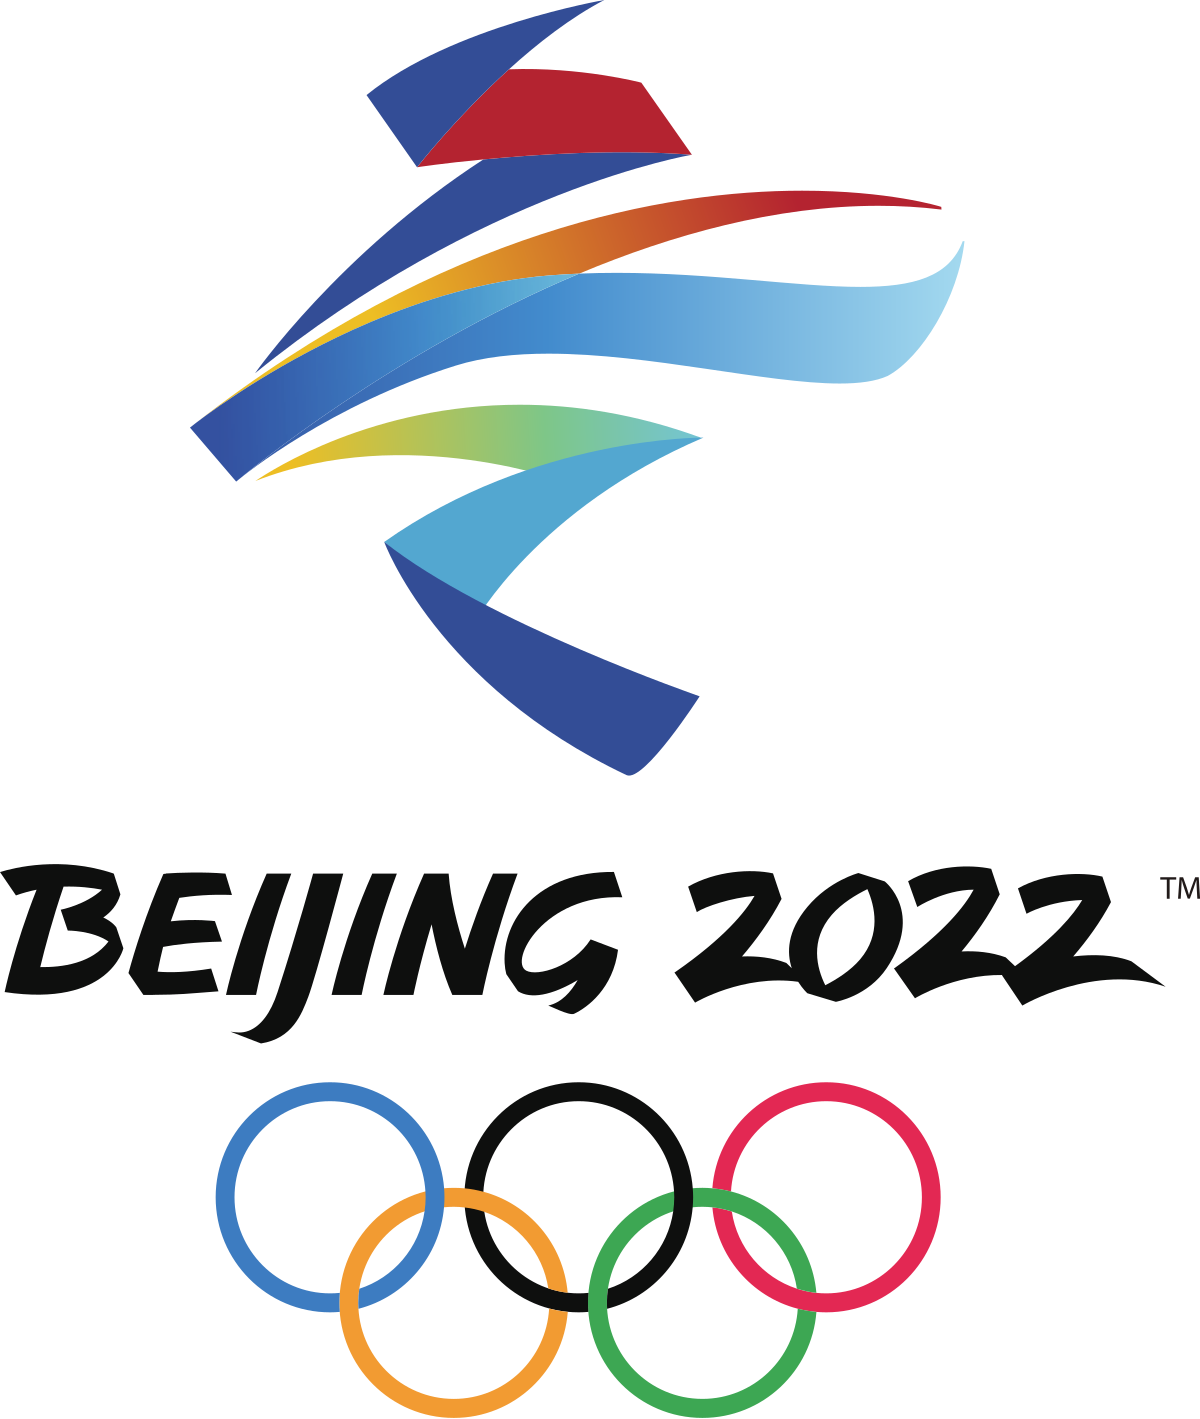 2022 أولمبياد بكين الشتوية حرف واحد فقط